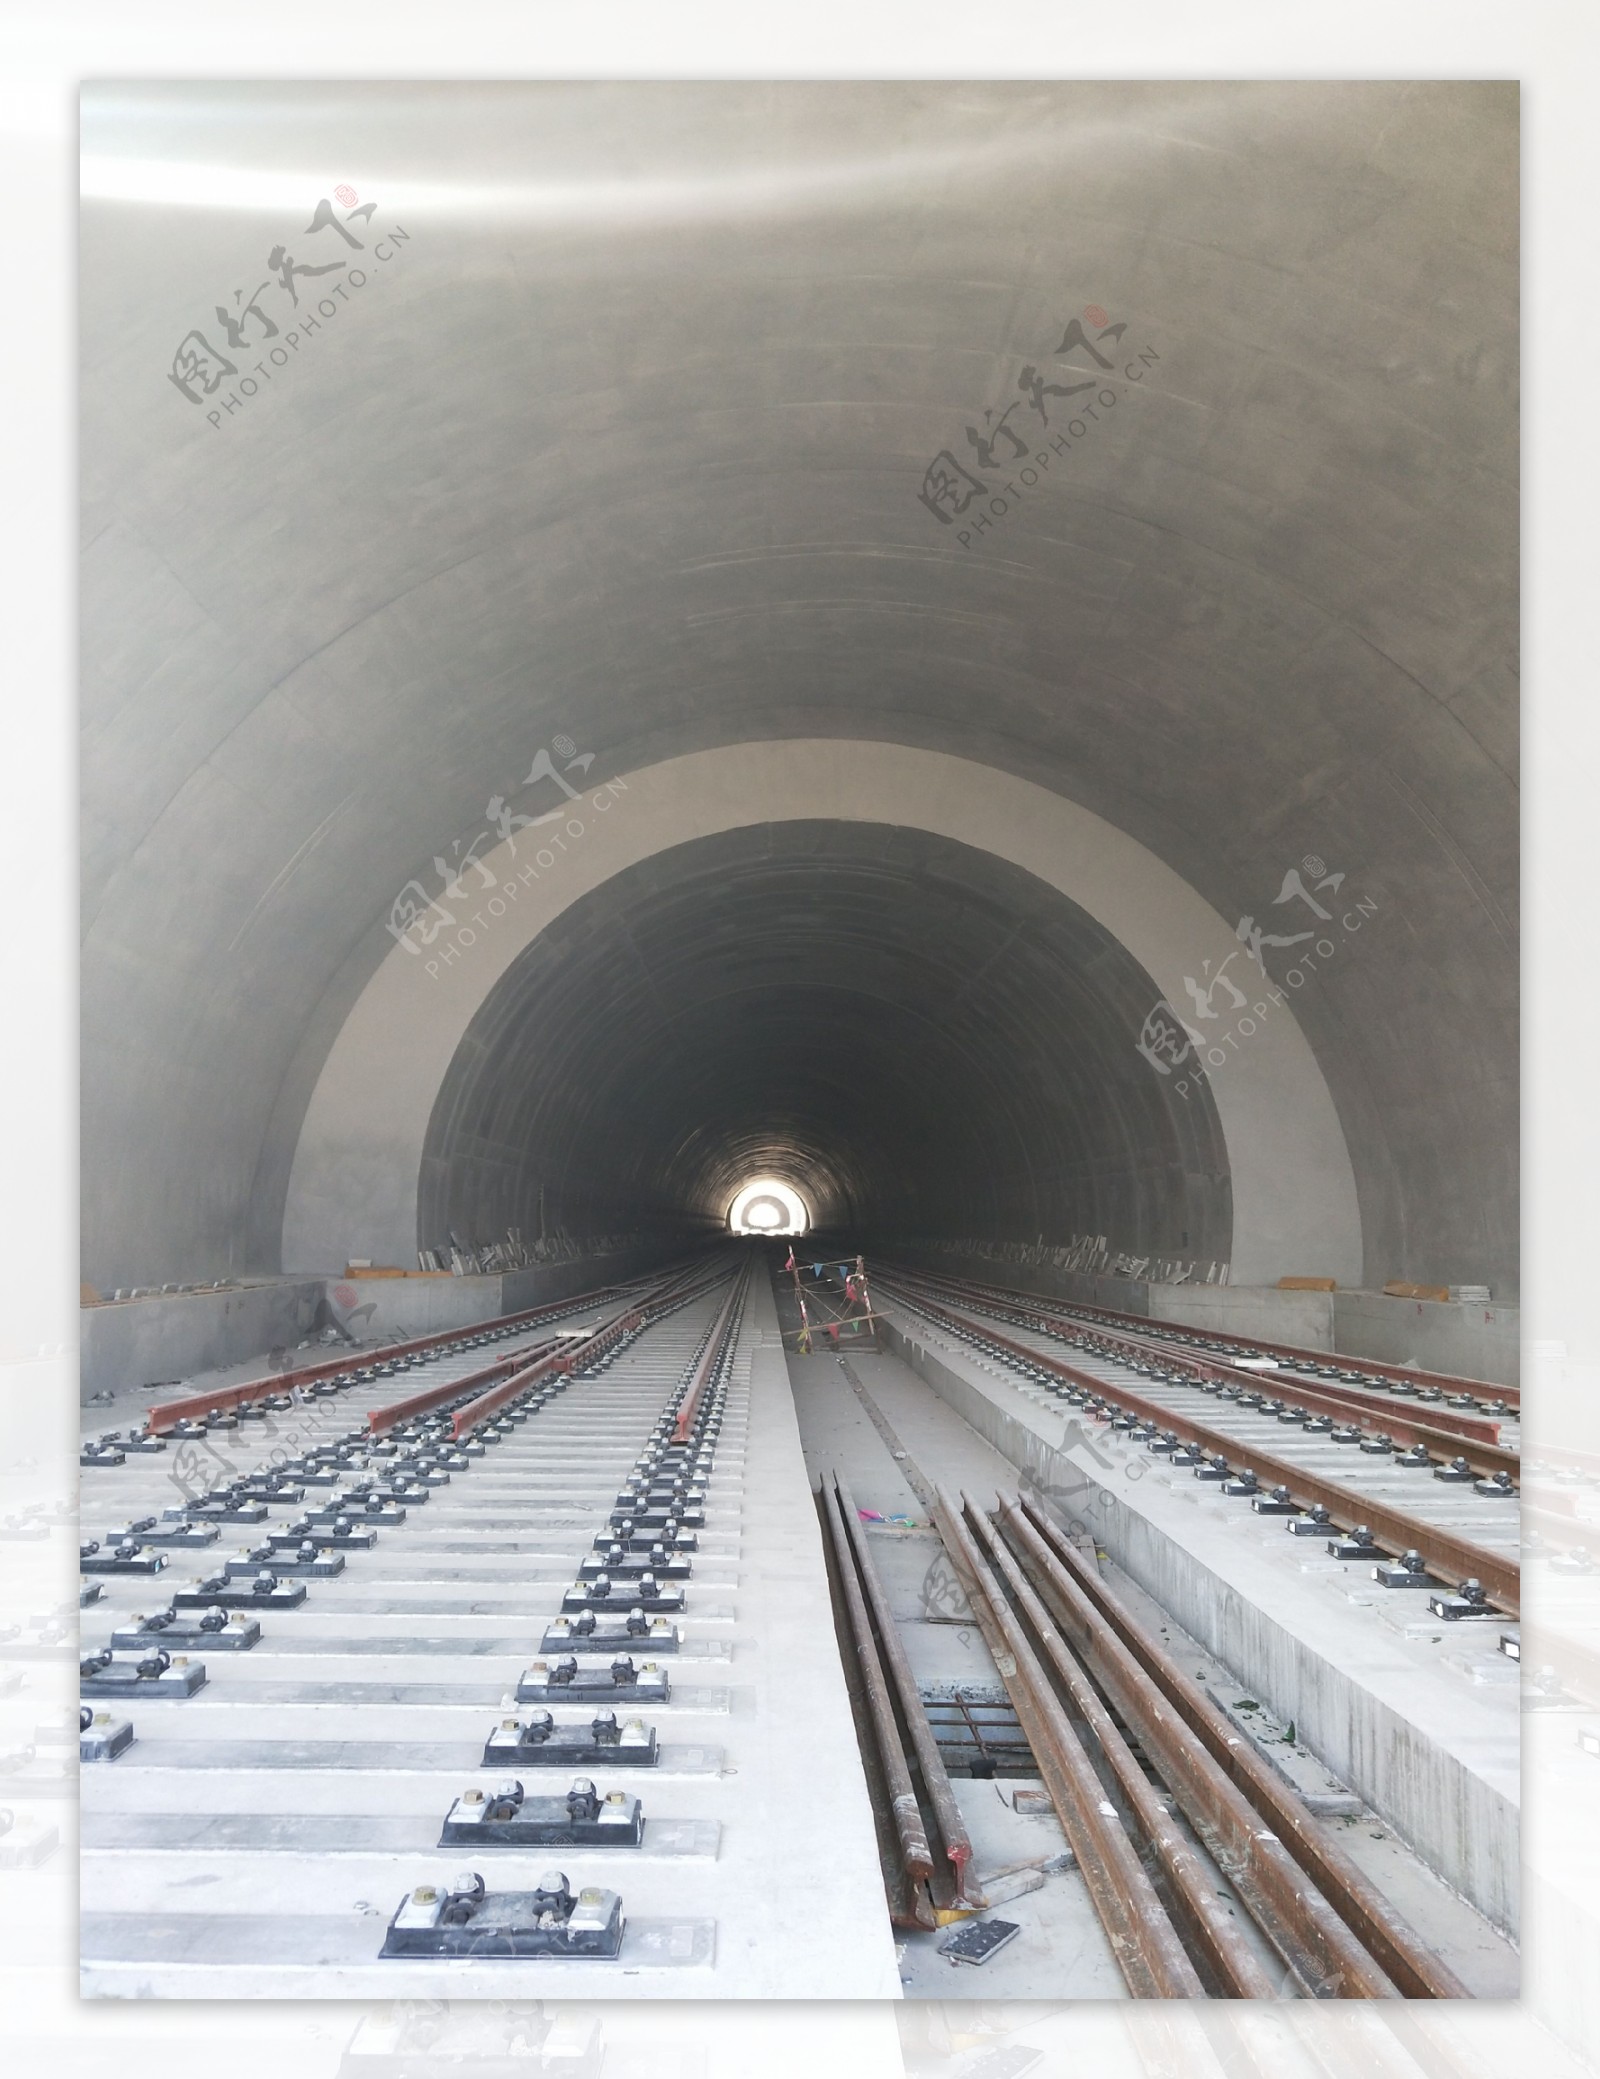 未建成的高铁隧道